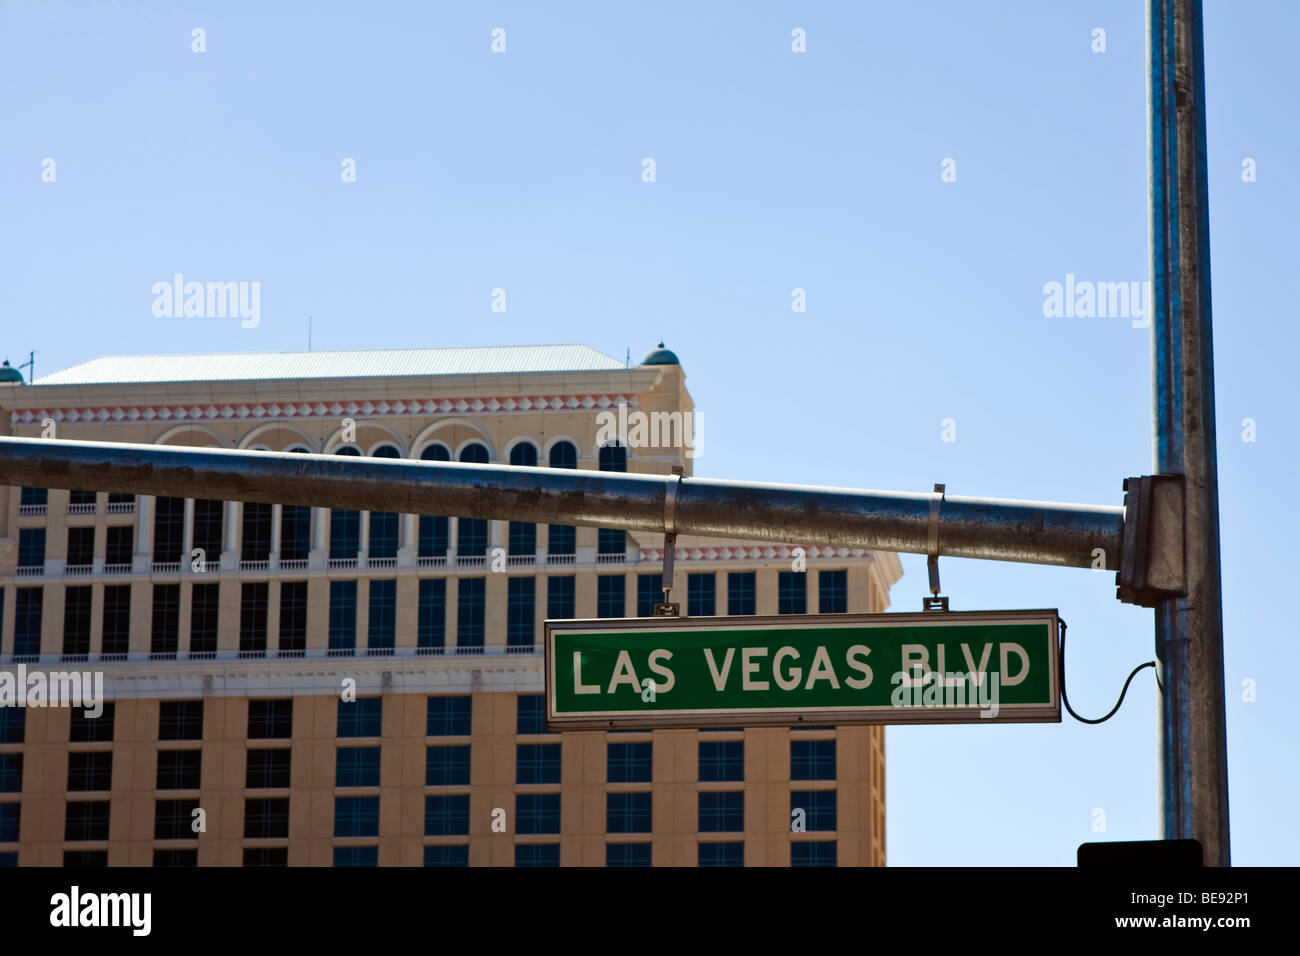 Las Vegas Blvd, Las Vegas, Nevada, USA Stock Photo